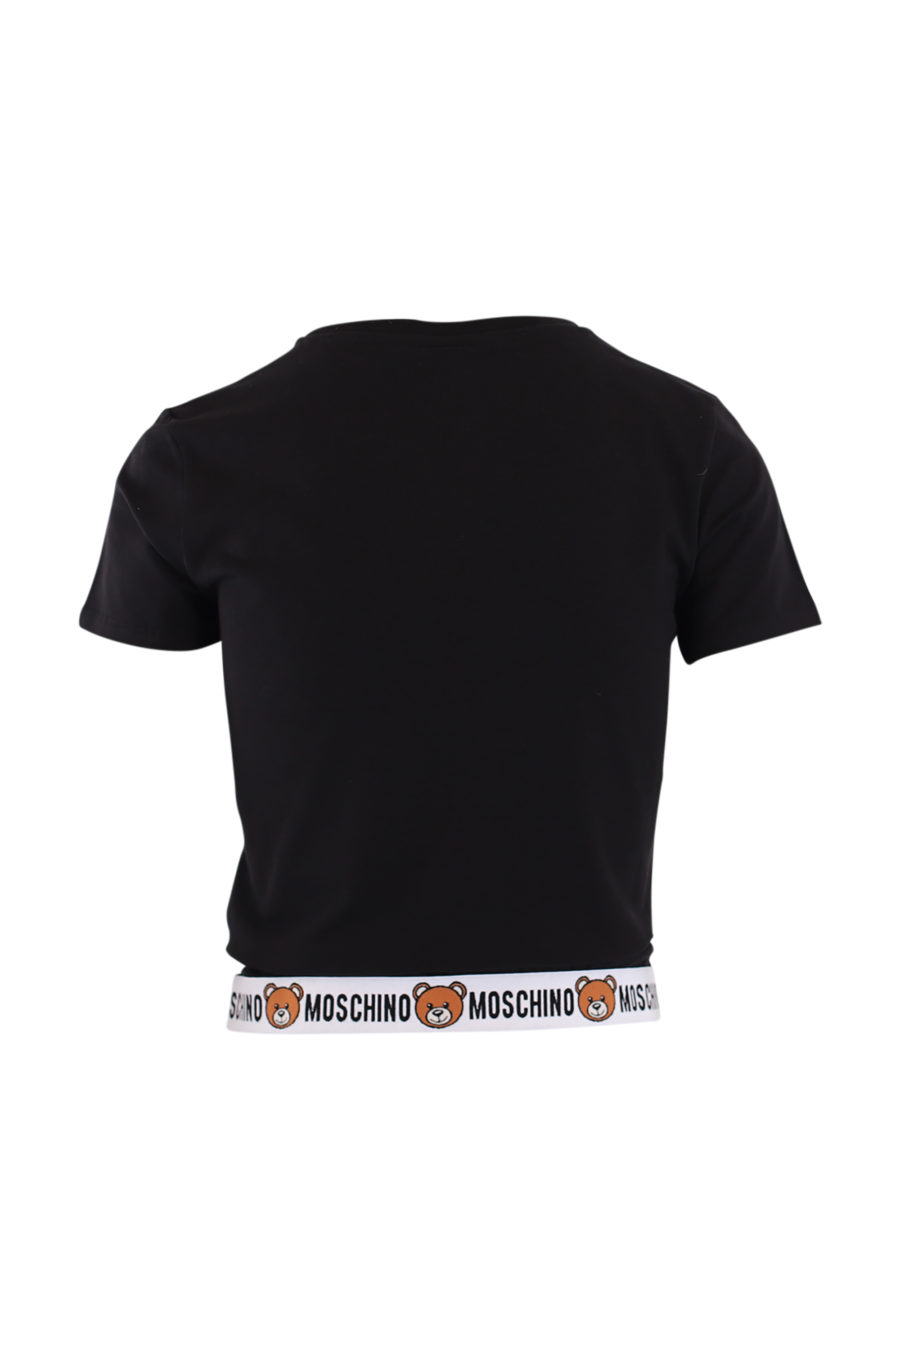 Camiseta negra y logo en cinta inferior - IMG 9045